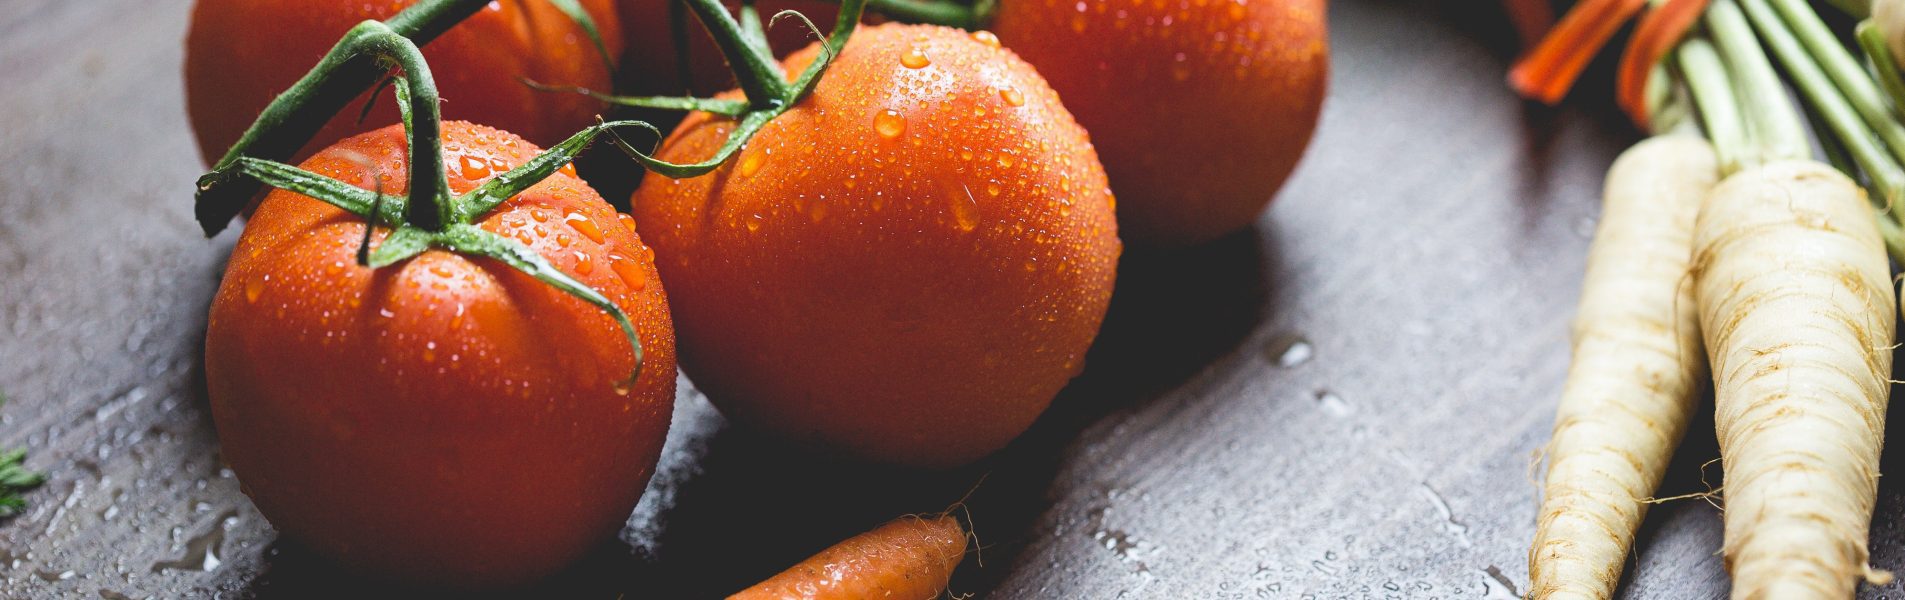 tros tomaten, bospenen en witte penen